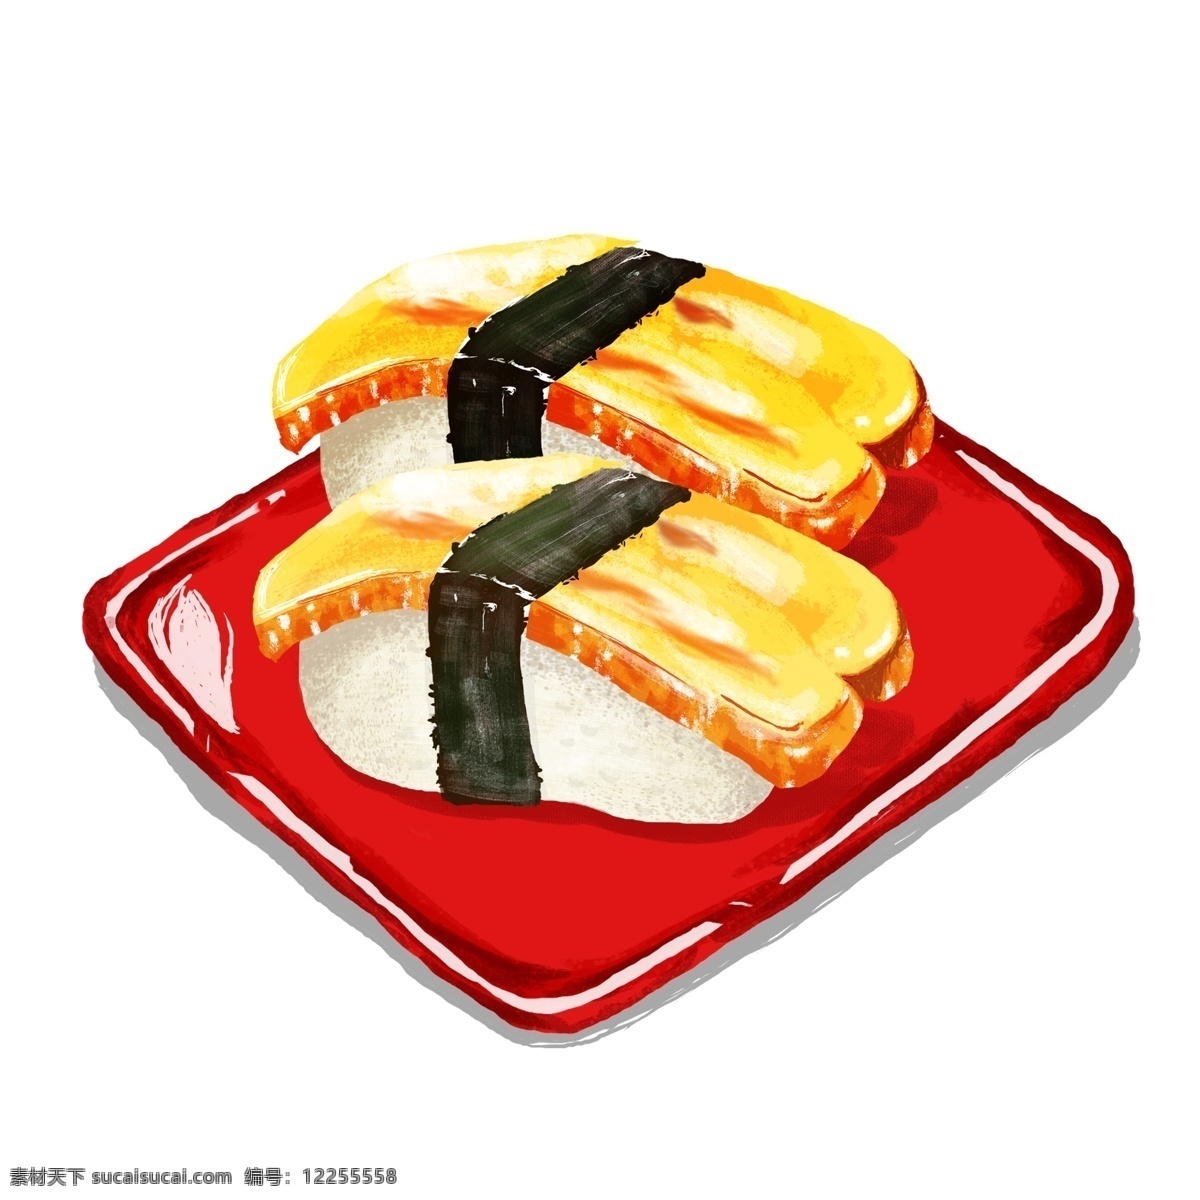 清新 日式 红盘 寿司 手绘 元素 日式寿司 日本料理 吃货节 日式美食 日本 红盘子 红色 手绘插图 插图 配图